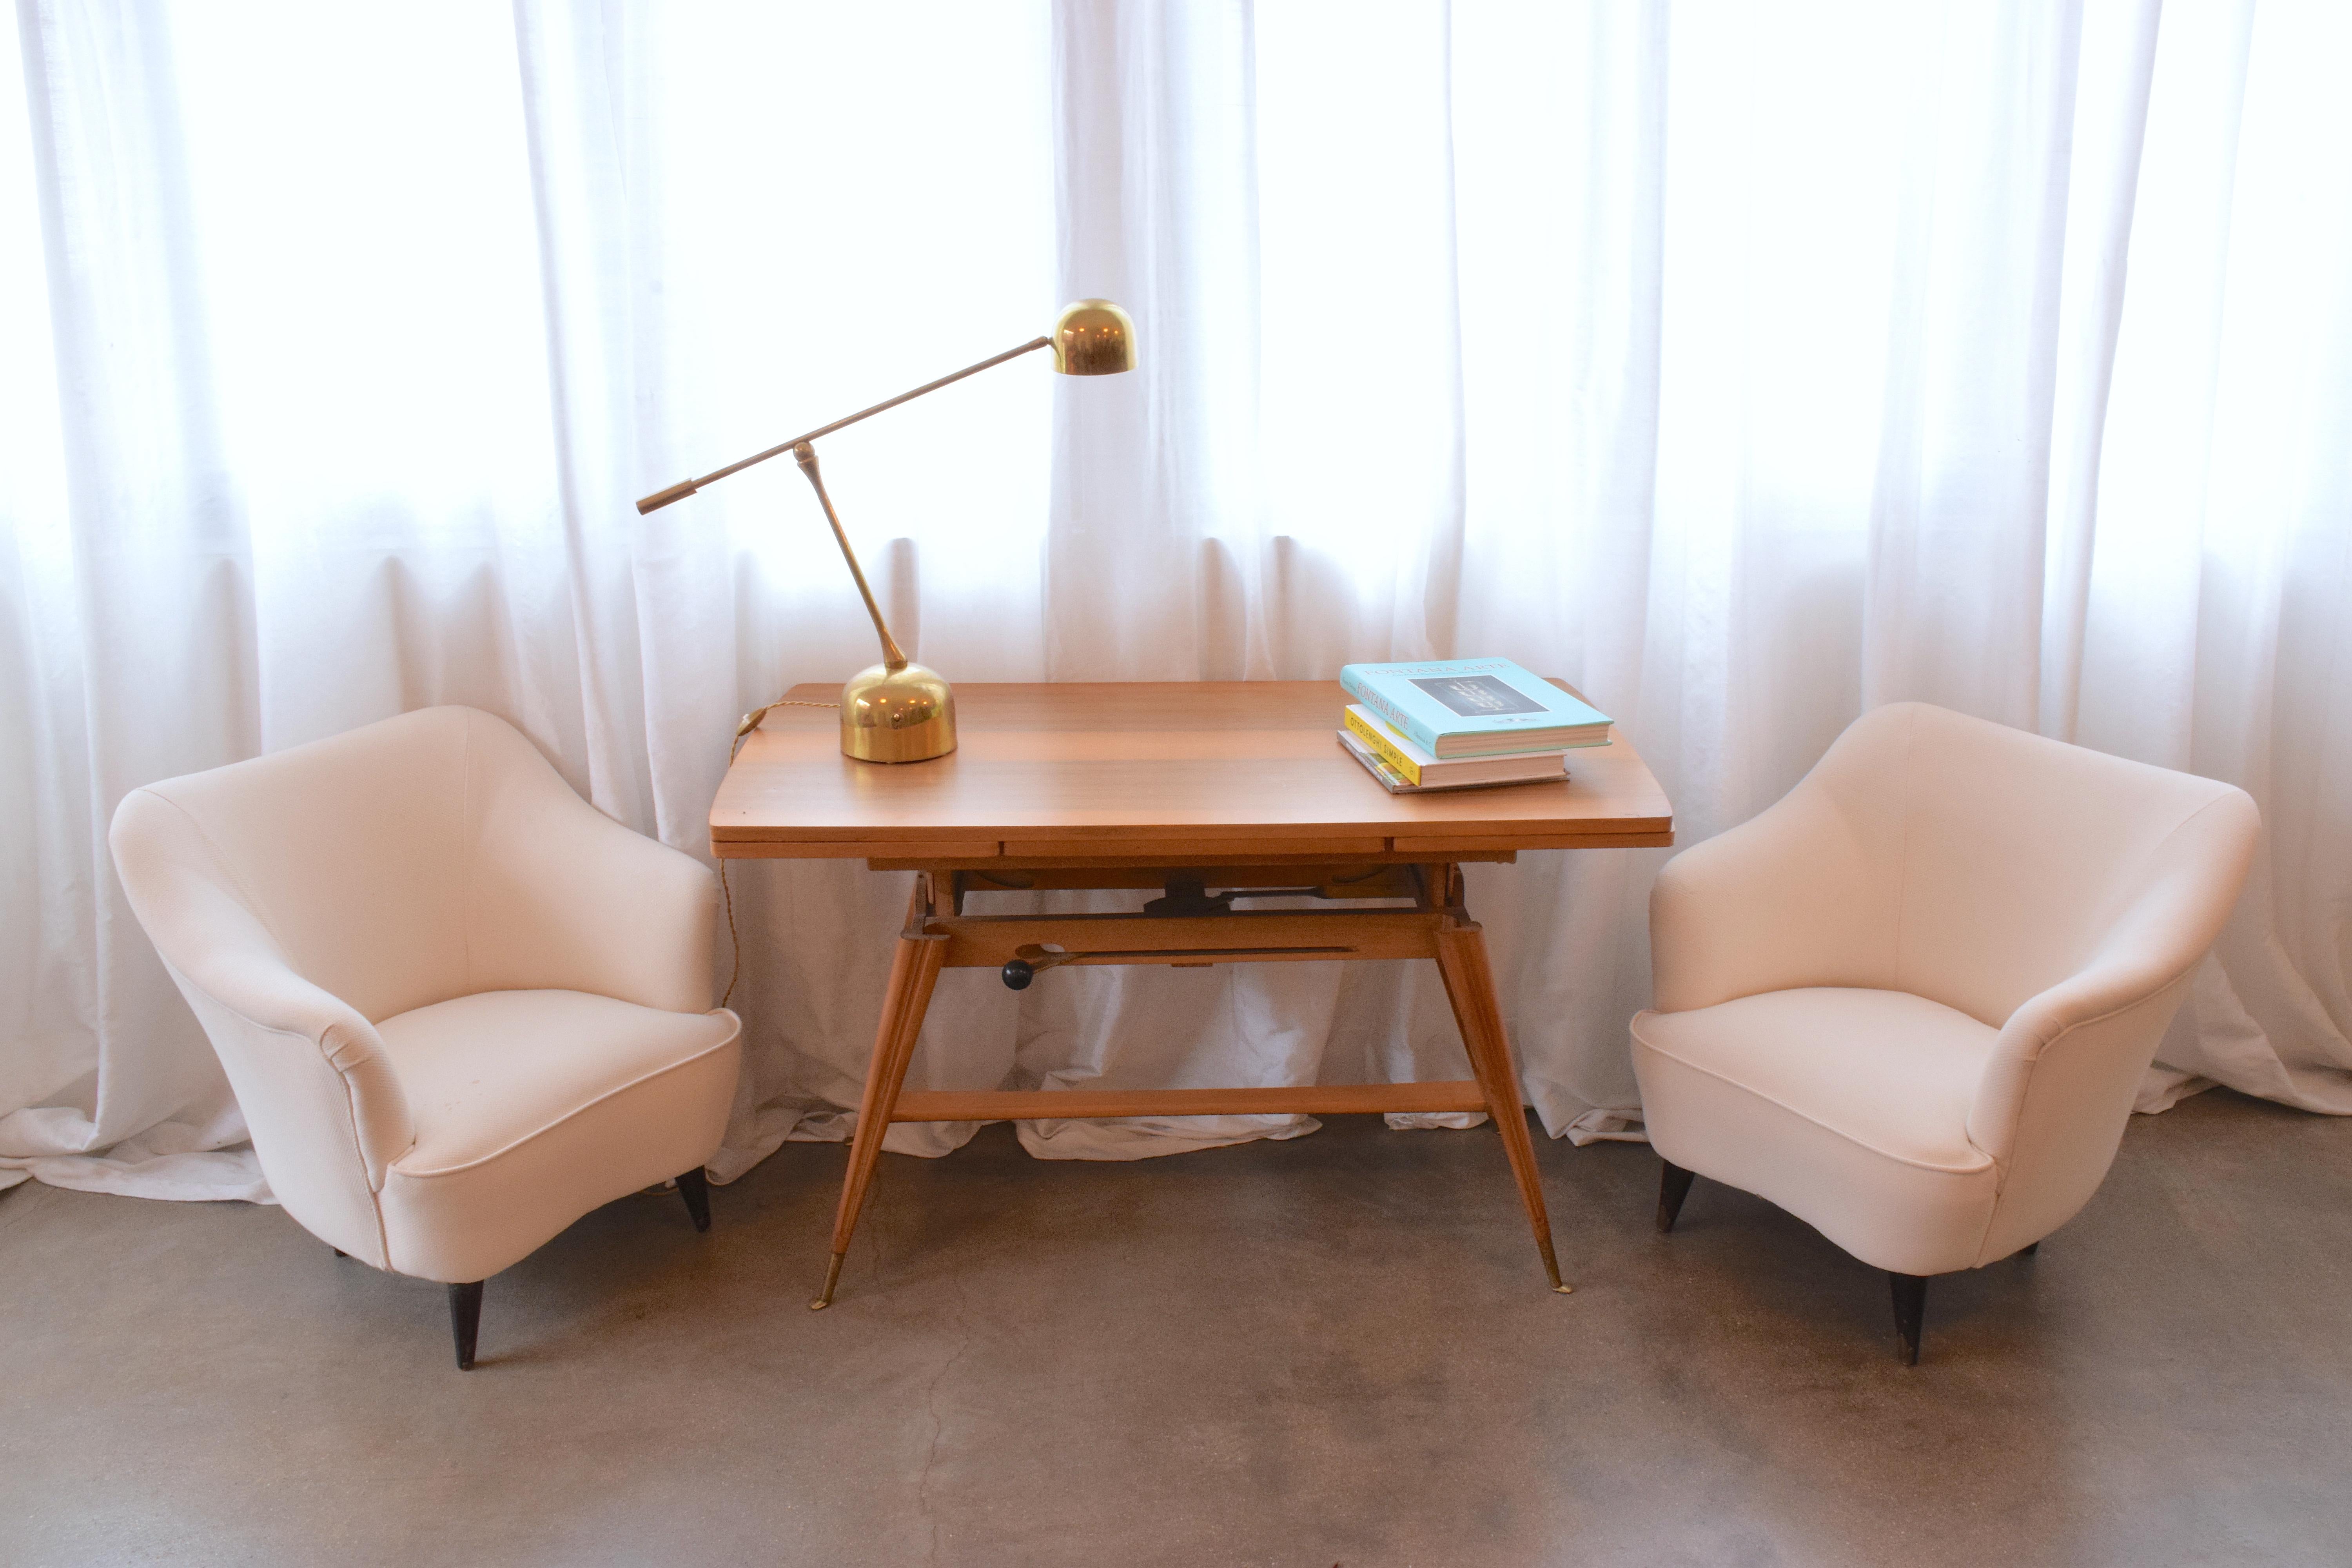 Ensemble de deux fauteuils italiens de collection, conçus par Gio Ponti pour l'entreprise Casa e Giardino à la fin des années 1930.
Ils n'ont pas encore été restaurés. Le prix comprend la restauration complète avec choix du tissu. 
Italie, vers les